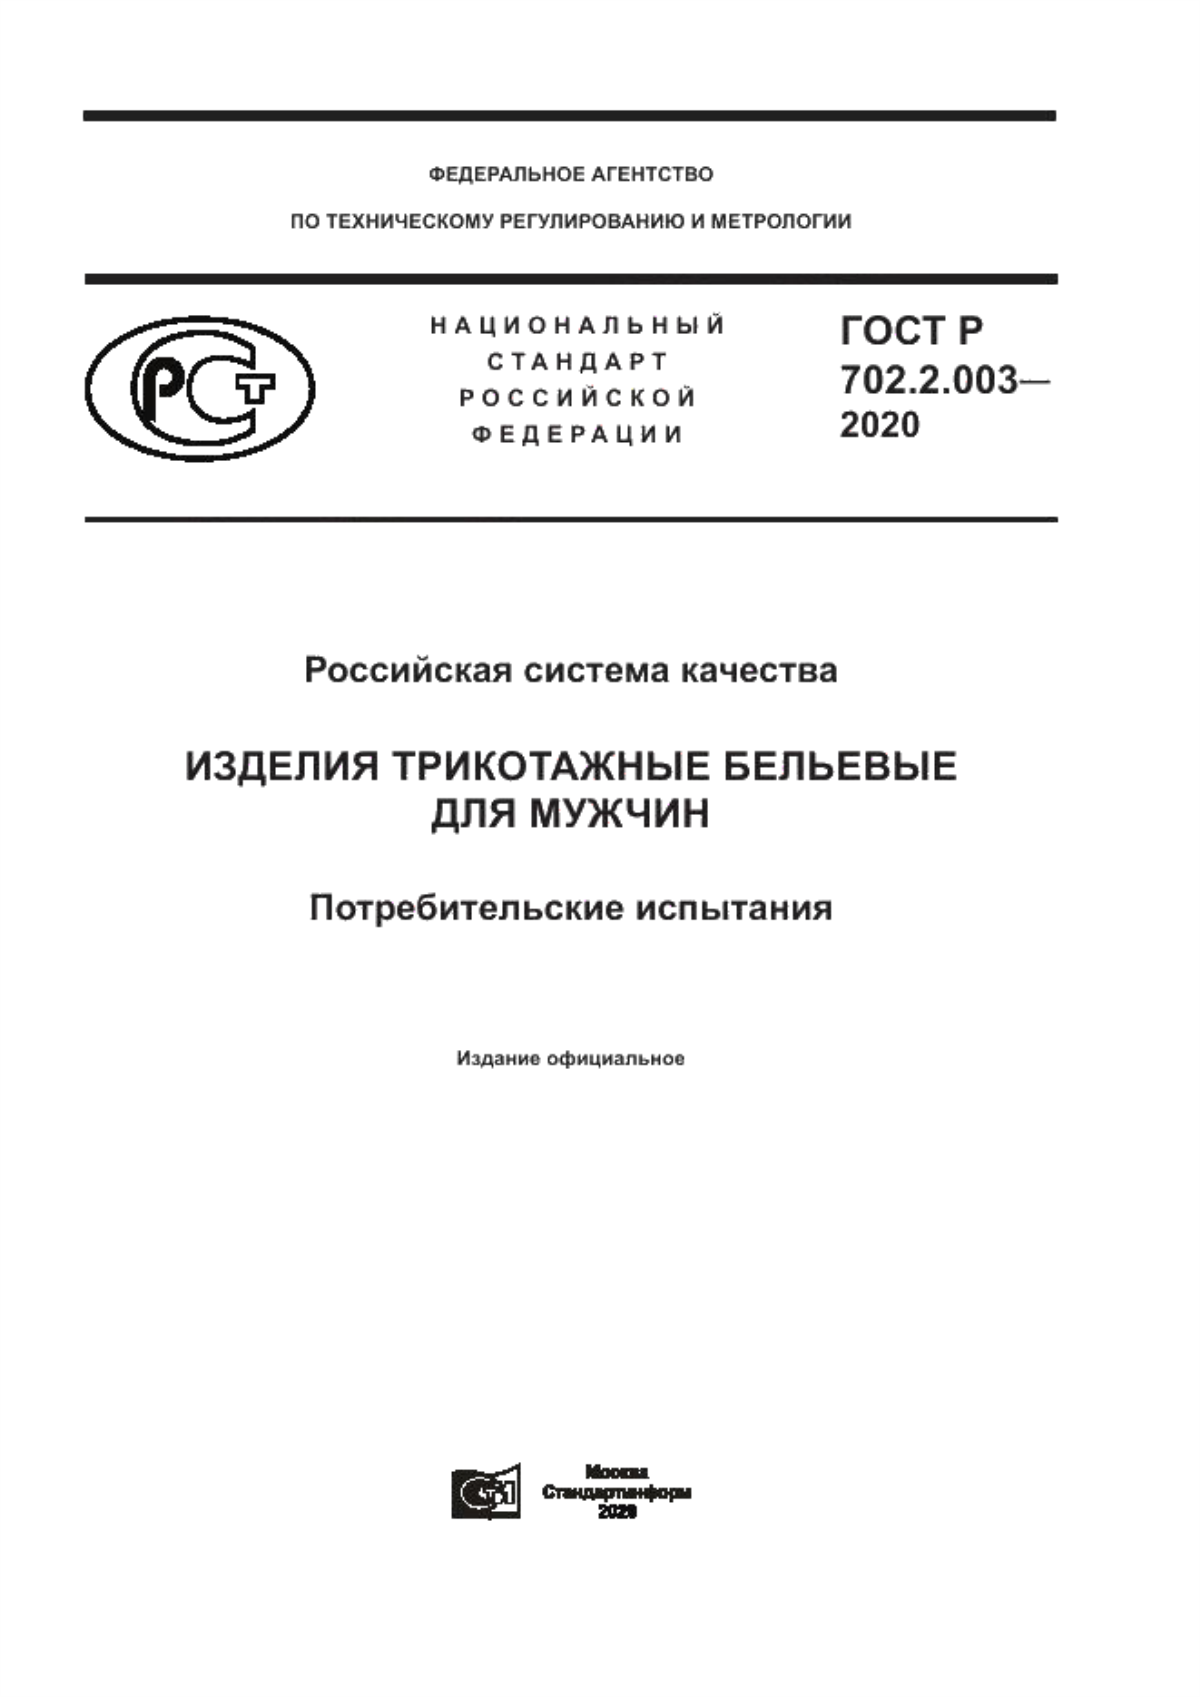 ГОСТ Р 702.2.003-2020 Российская система качества. Изделия трикотажные бельевые для мужчин. Потребительские испытания